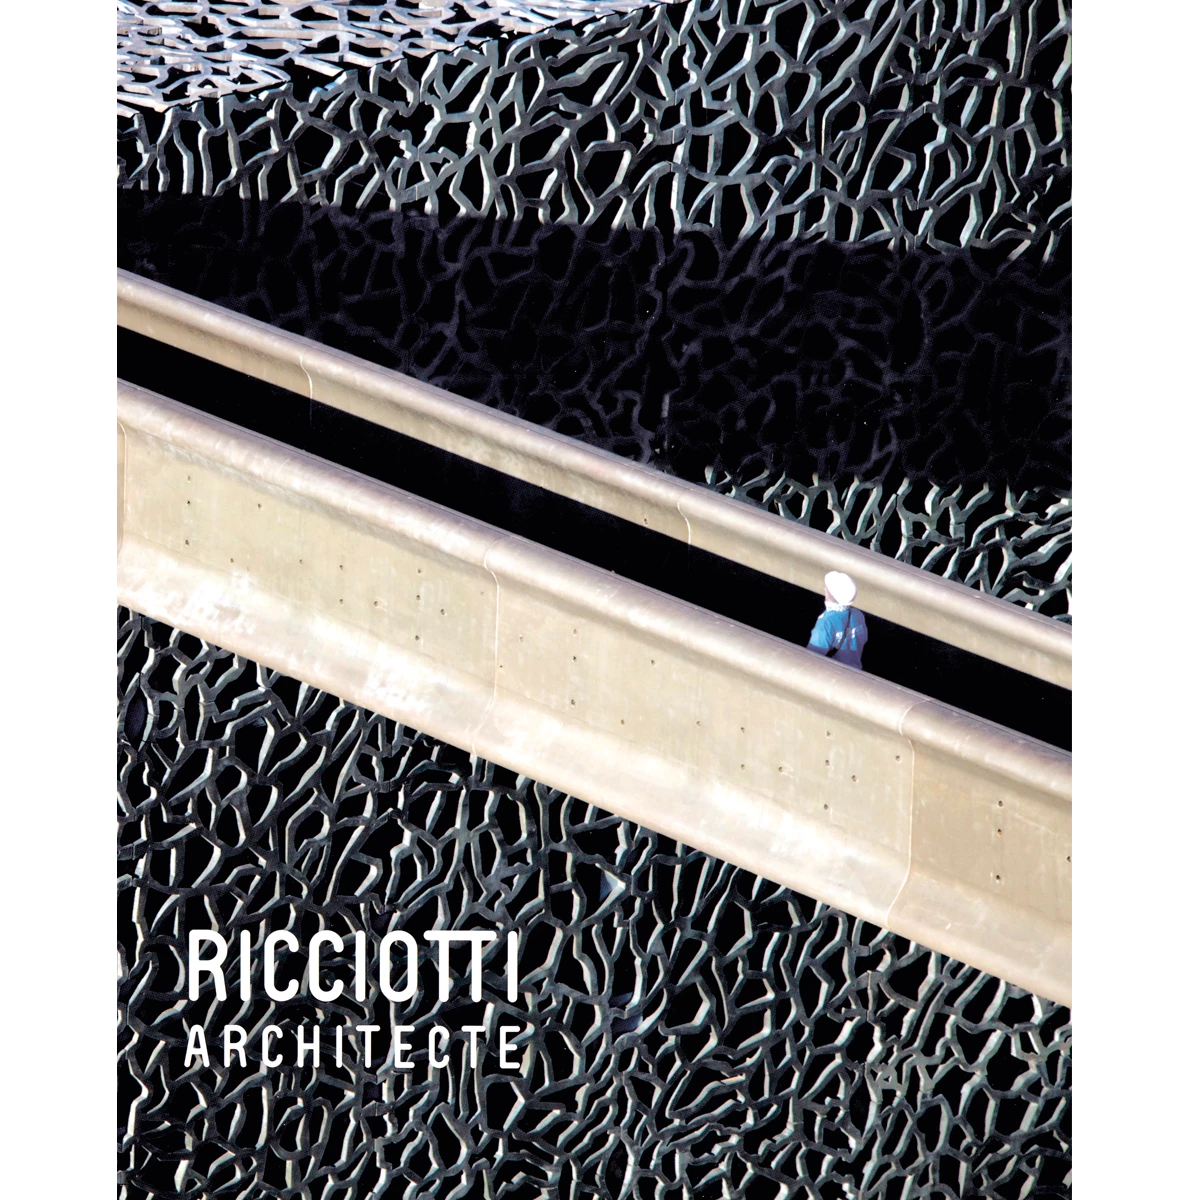 Ricciotti Architecte